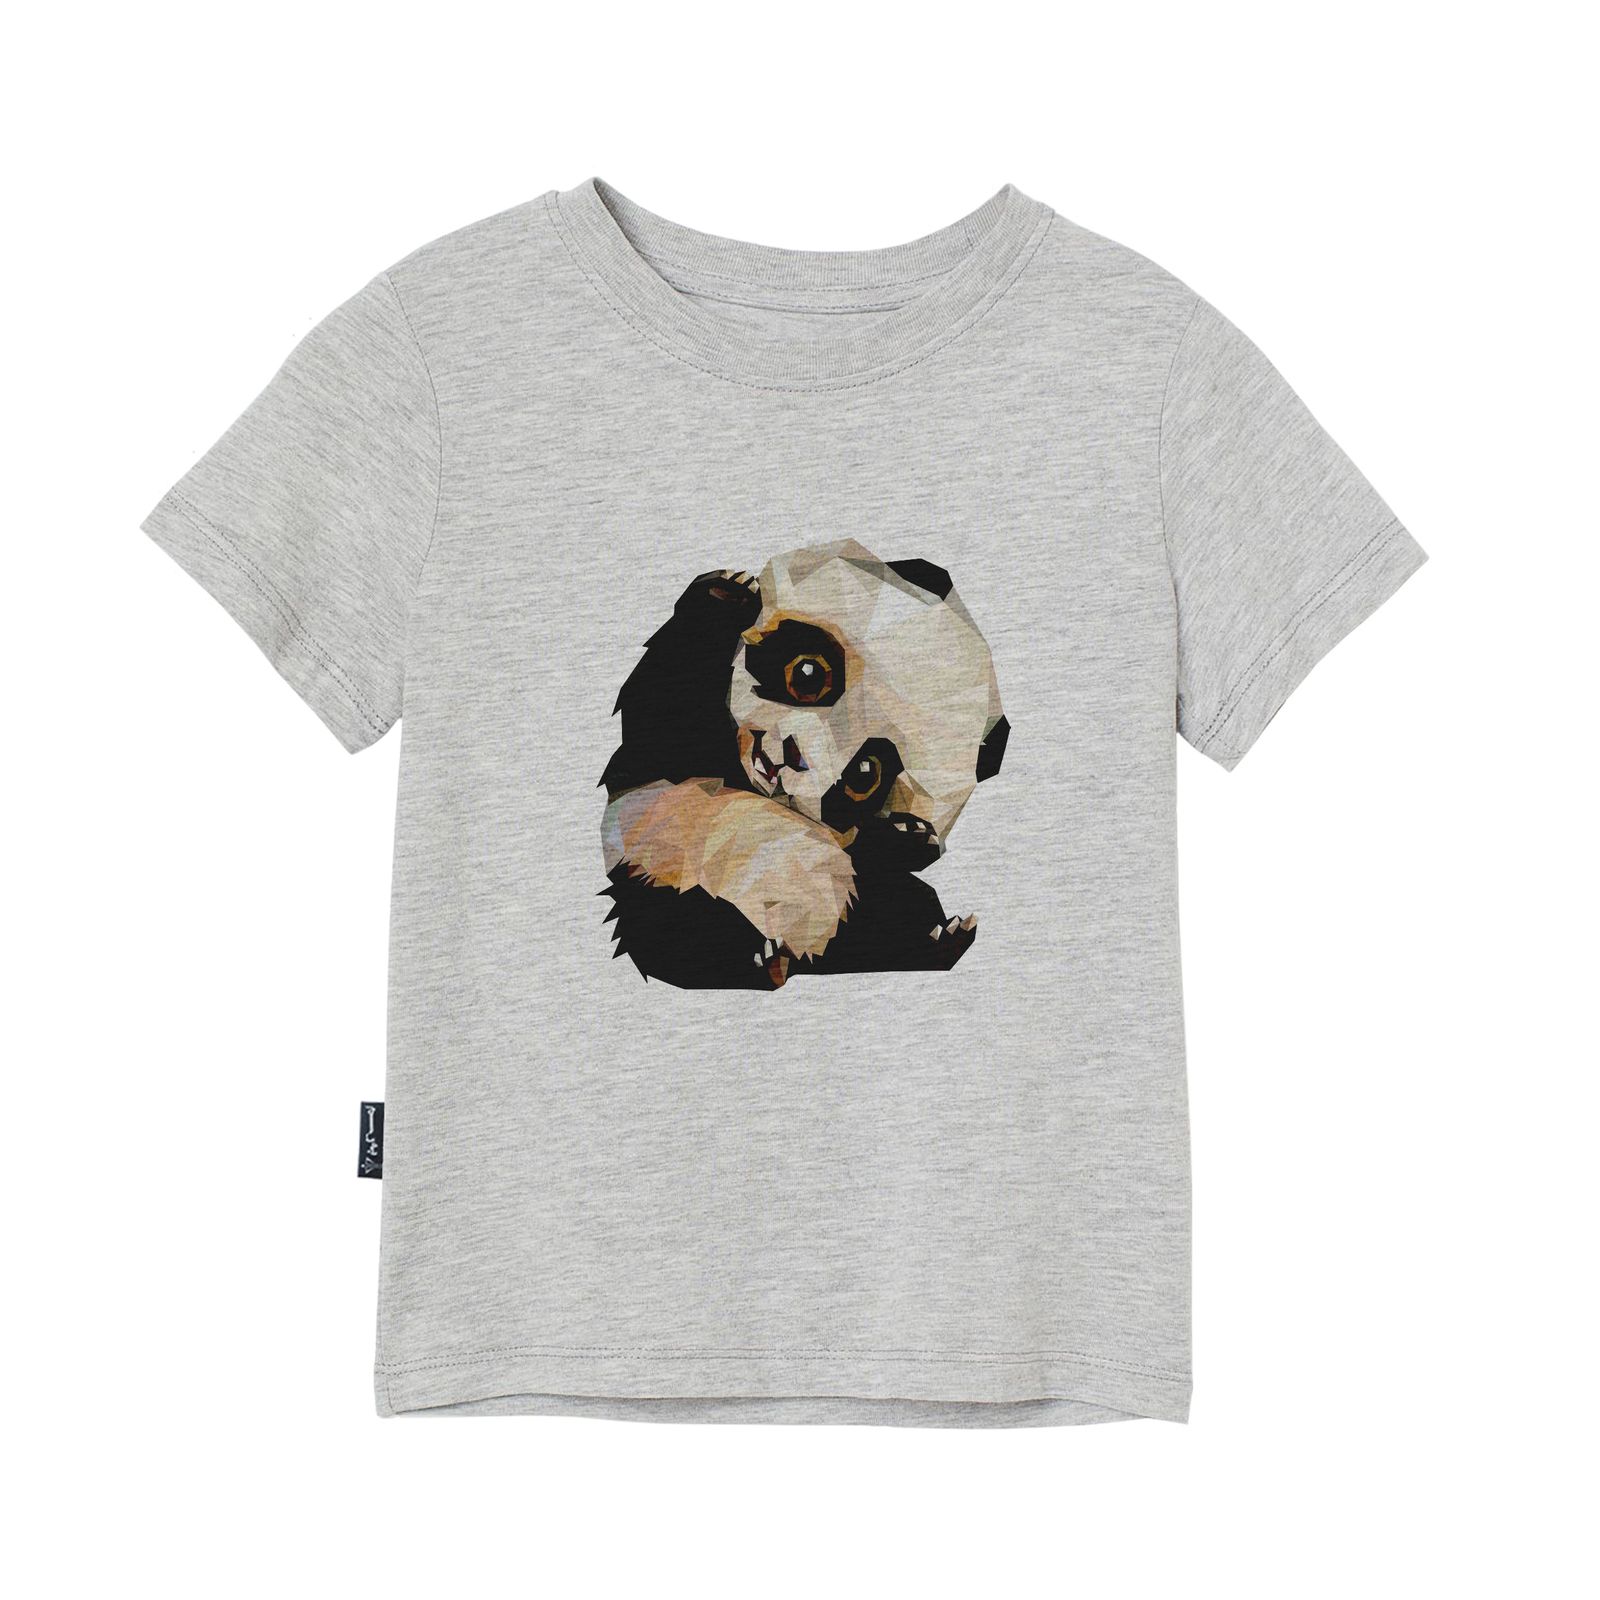 تی شرت آستین کوتاه پسرانه به رسم مدل پاندا کد 1124 -  - 1